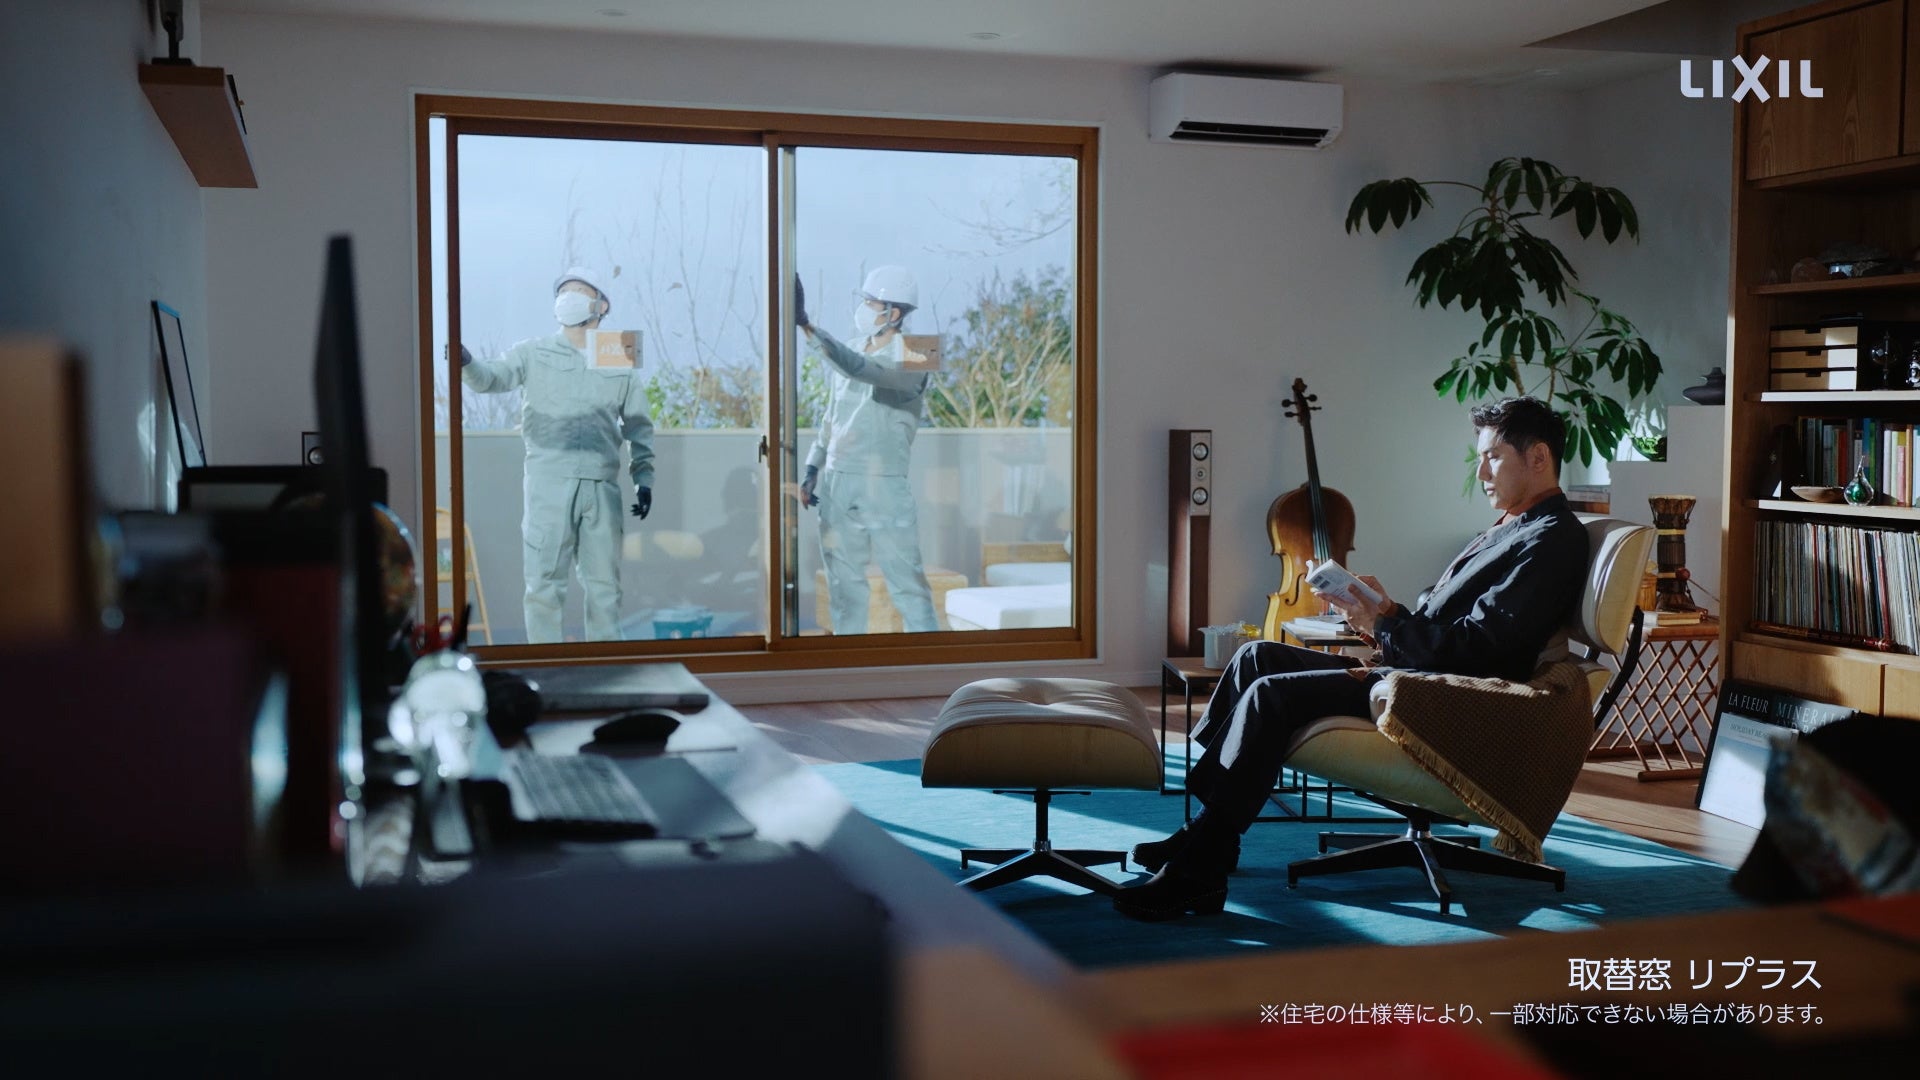 高性能なトリプルガラスの窓リフォームで、省エネな暮らしを実現　俳優本木雅弘さんを起用したCM「#省エネ住まいで幸せに リプラス夏」篇 放映開始のサブ画像3